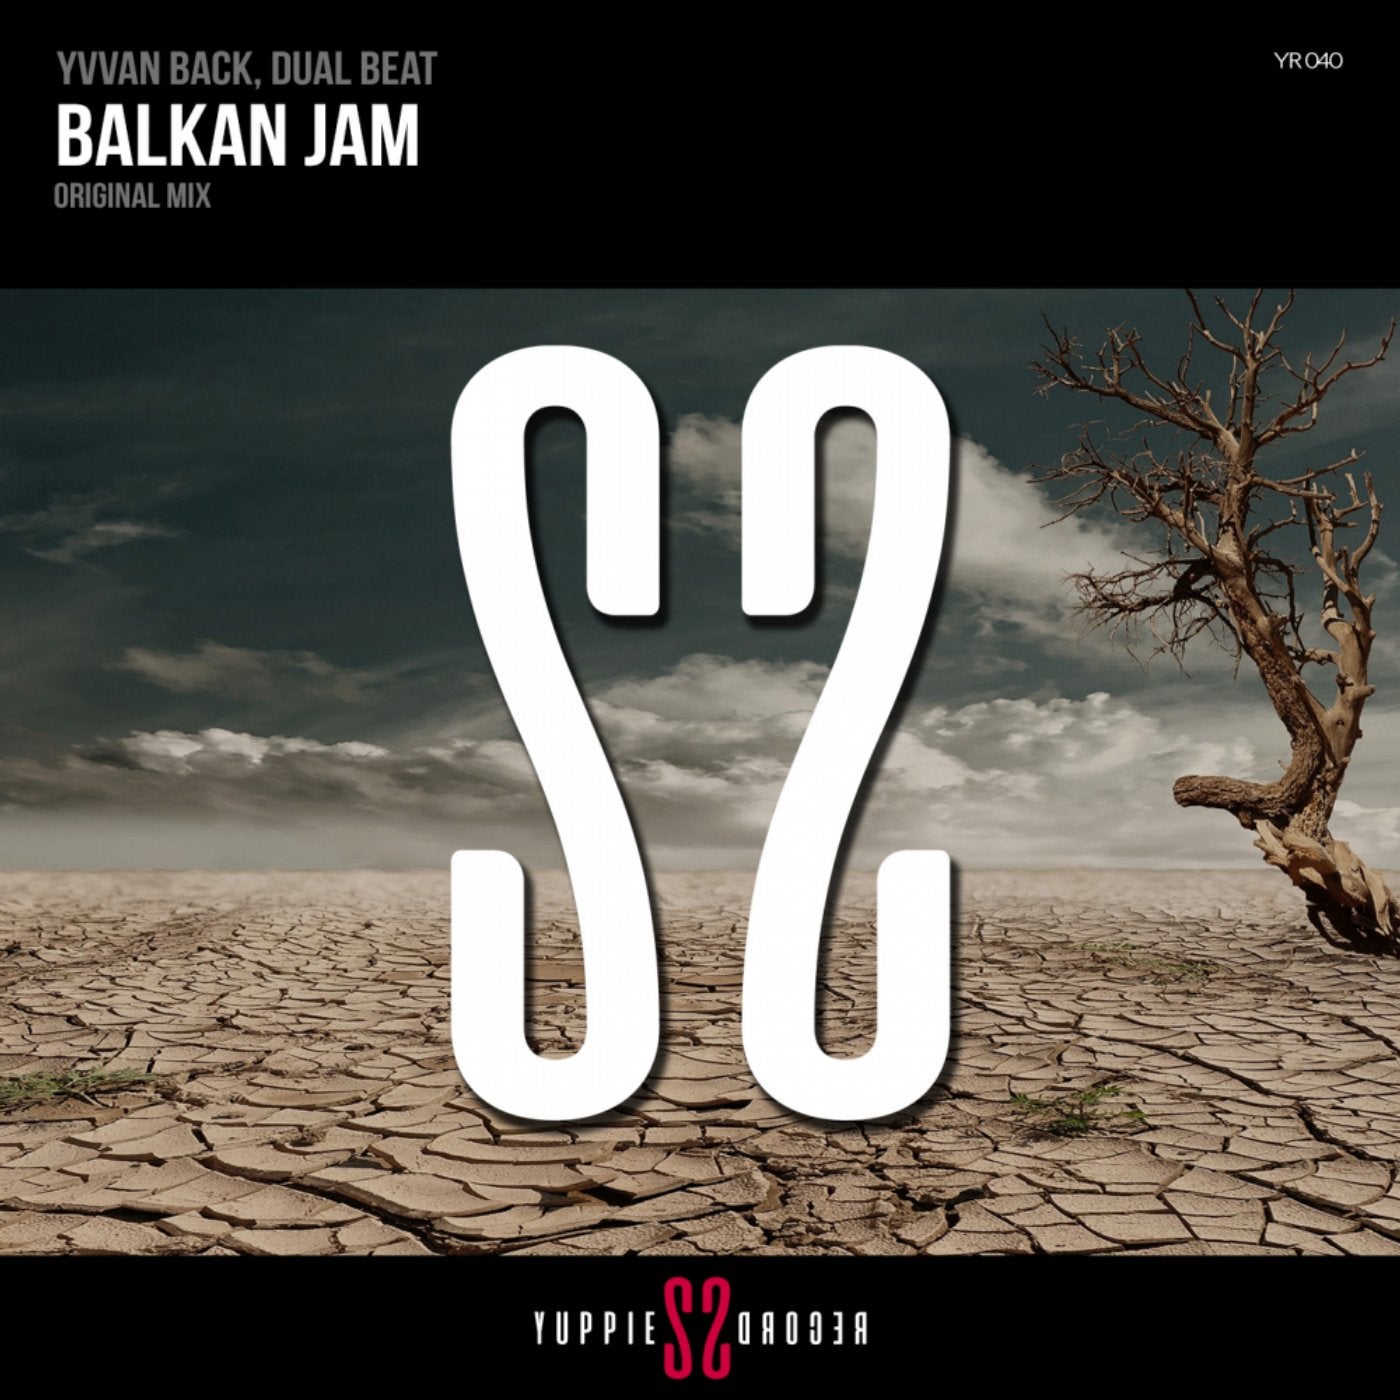 Balkan Jam